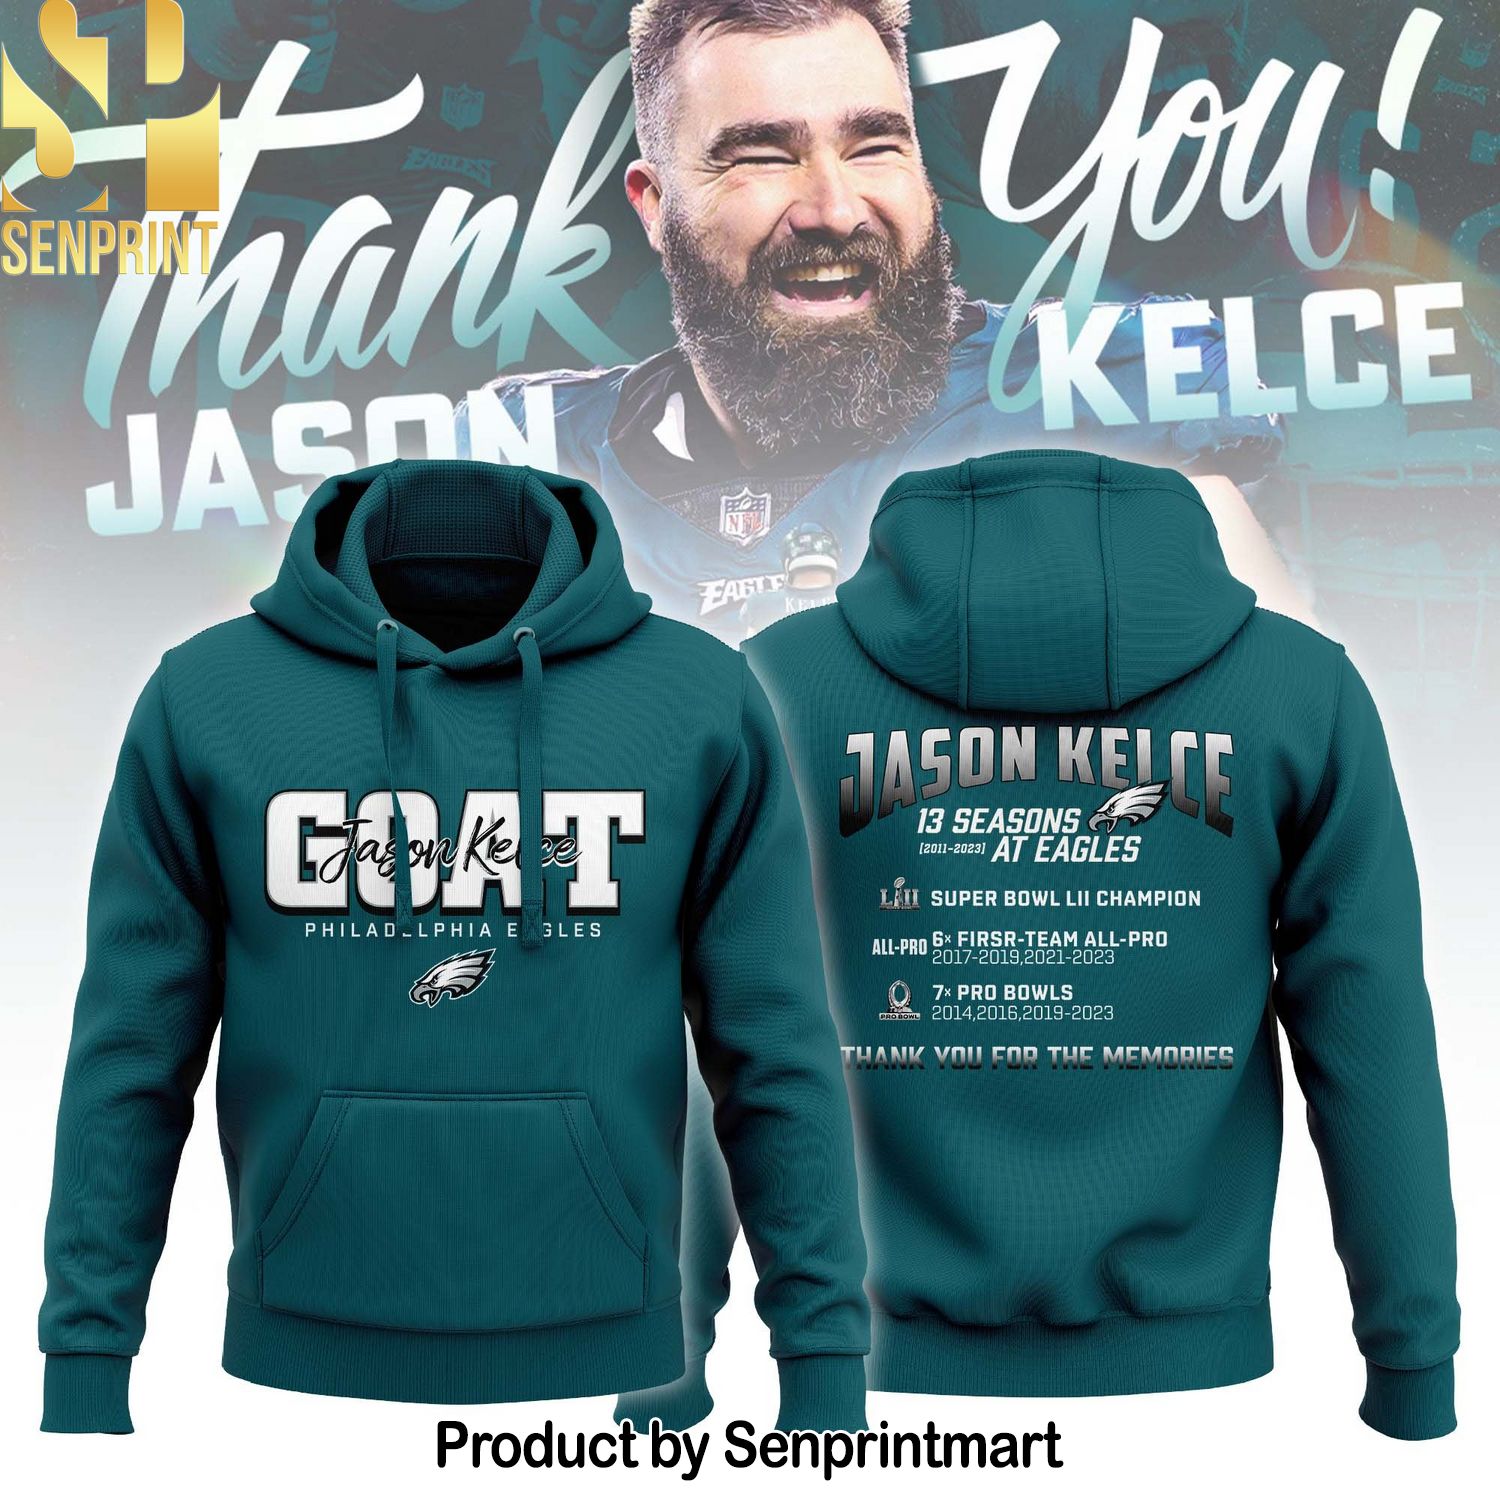 Philadelphia Eagles Goat Jason Kelce Shirt